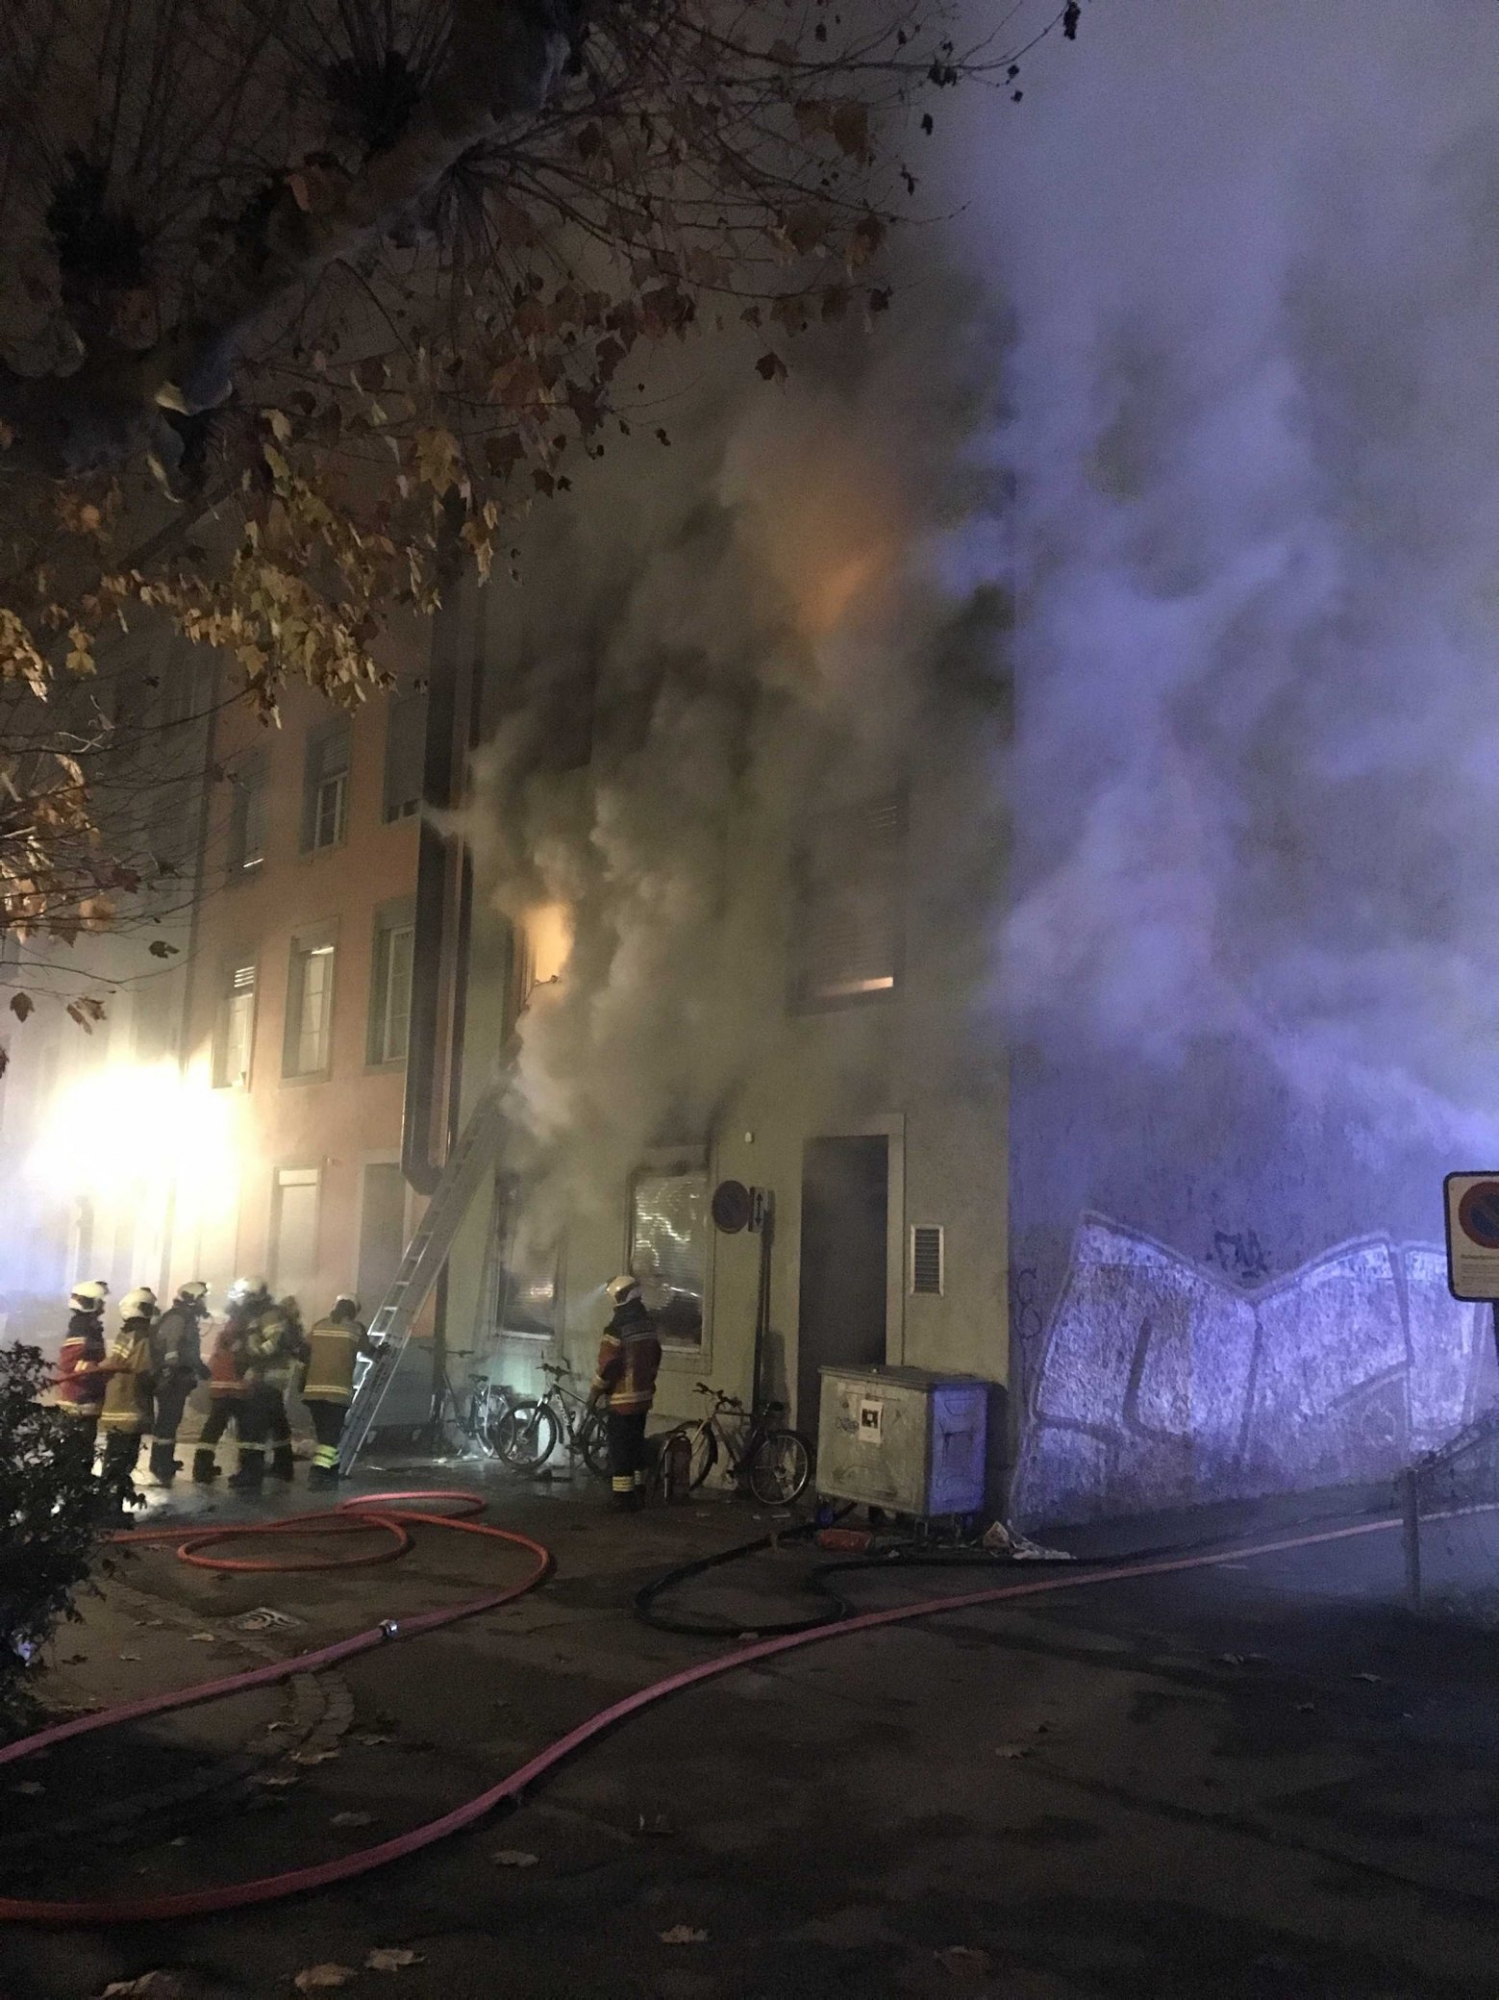 HANDOUT - Loescharbeiten der Feuerwehr nach dem Ausbruch eines Feuers in einem Mehrfamilienhaus in Solothurn am Montag, 26. November 2018. Gemaess Polizeiangaben wurden beim Brand sechs Hausbewohner getoetet, mehrere weitere Personen wurden verletzt. Die Brandursache ist noch unklar. (HANDOUT KANTONSPOLIZEI SOLOTHURN) *** NO SALES, DARF NUR MIT VOLLSTAENDIGER QUELLENANGABE VERWENDET WERDEN *** SCHWEIZ SOLOTHURN BRAND